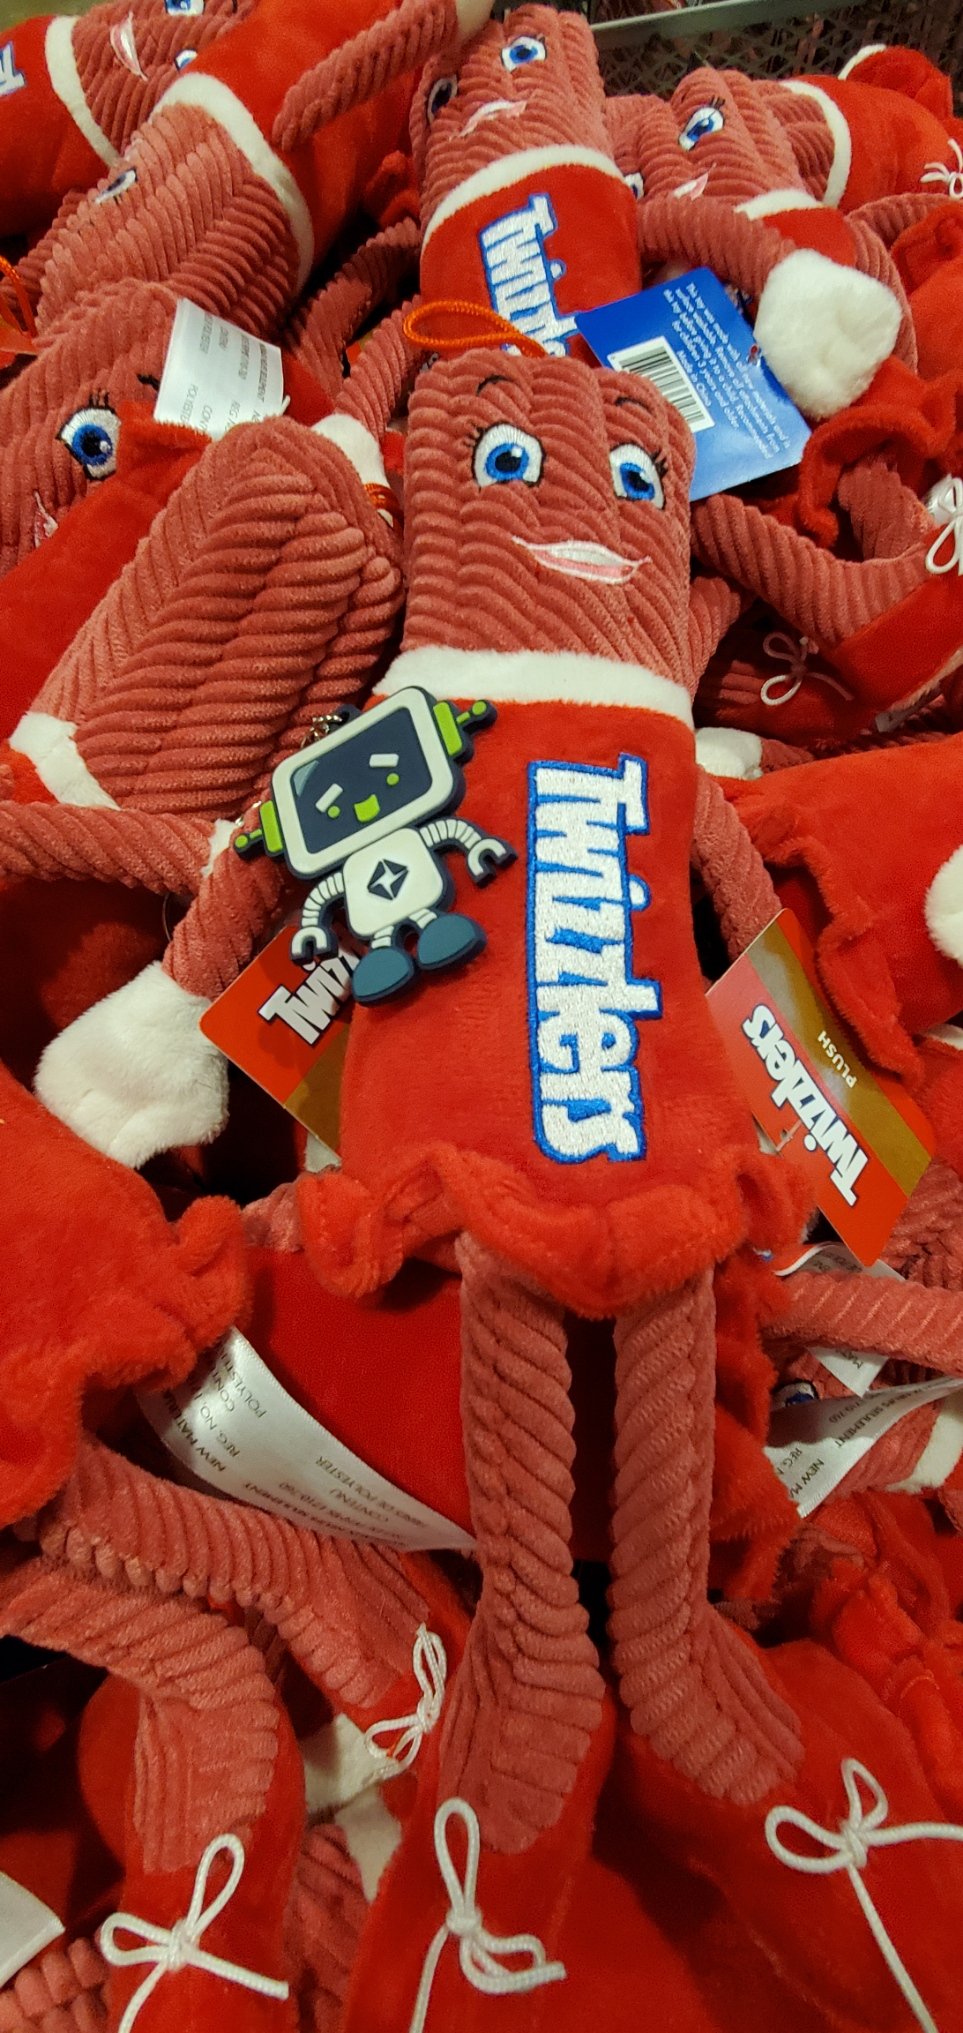 RoBert Loves Candy!